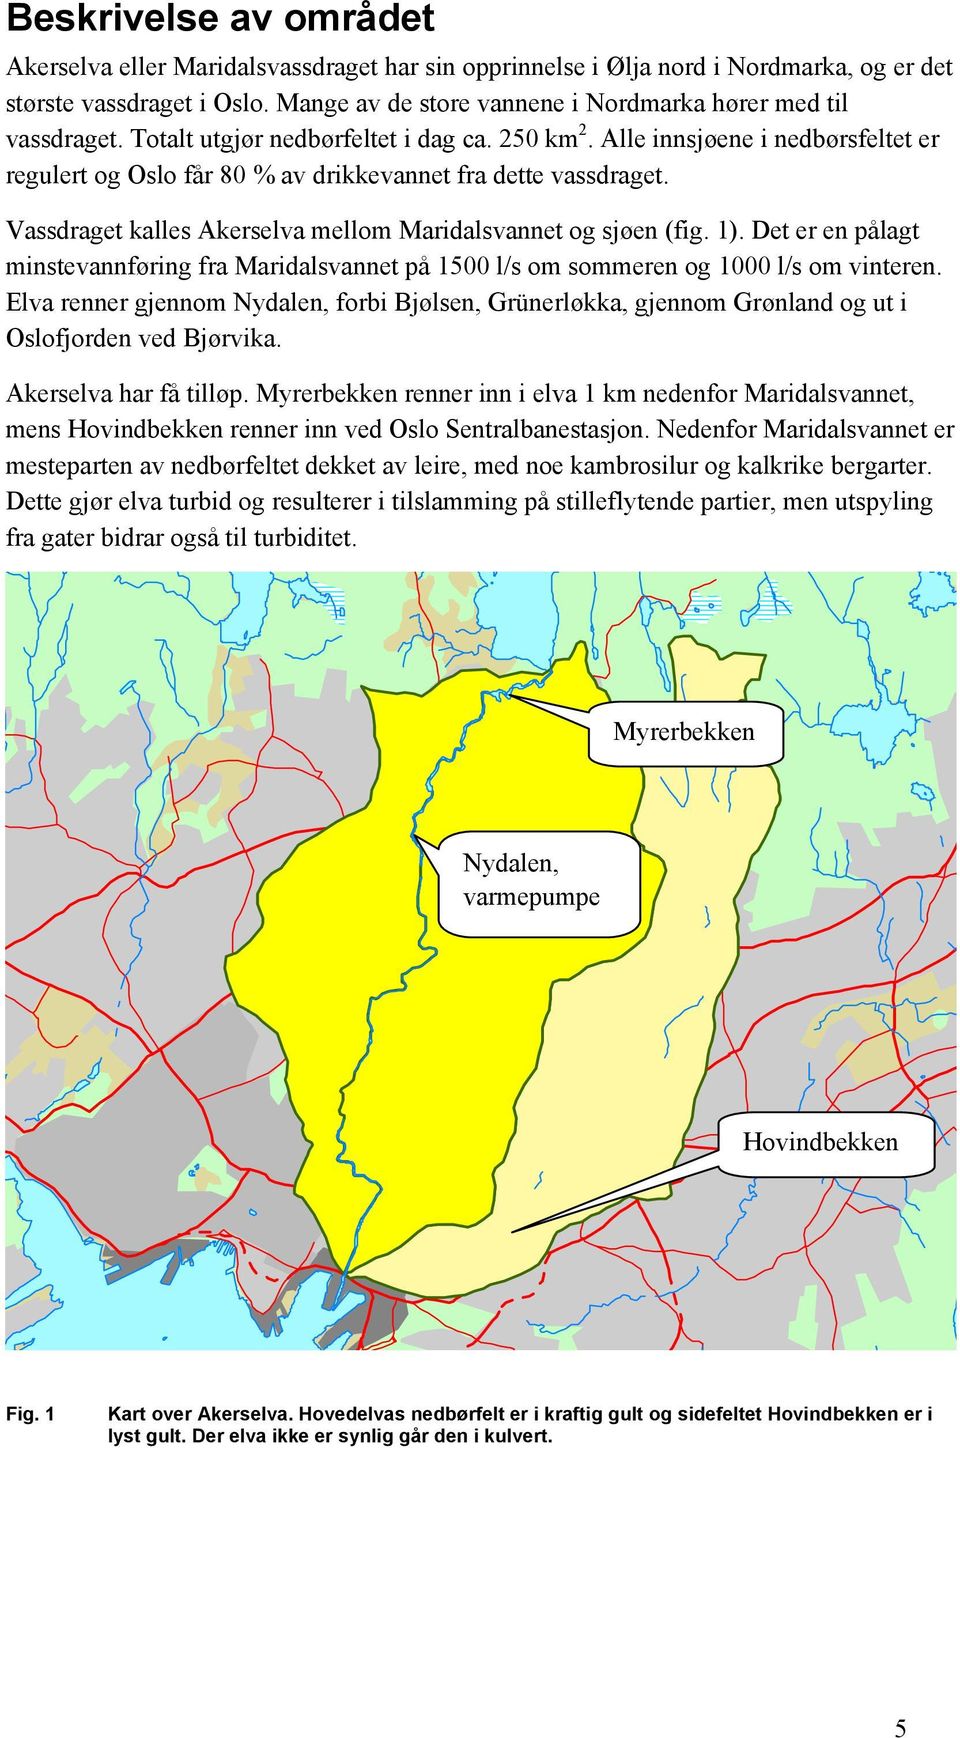 Alle innsjøene i nedbørsfeltet er regulert og Oslo får 80 % av drikkevannet fra dette vassdraget. Vassdraget kalles Akerselva mellom Maridalsvannet og sjøen (fig. 1).